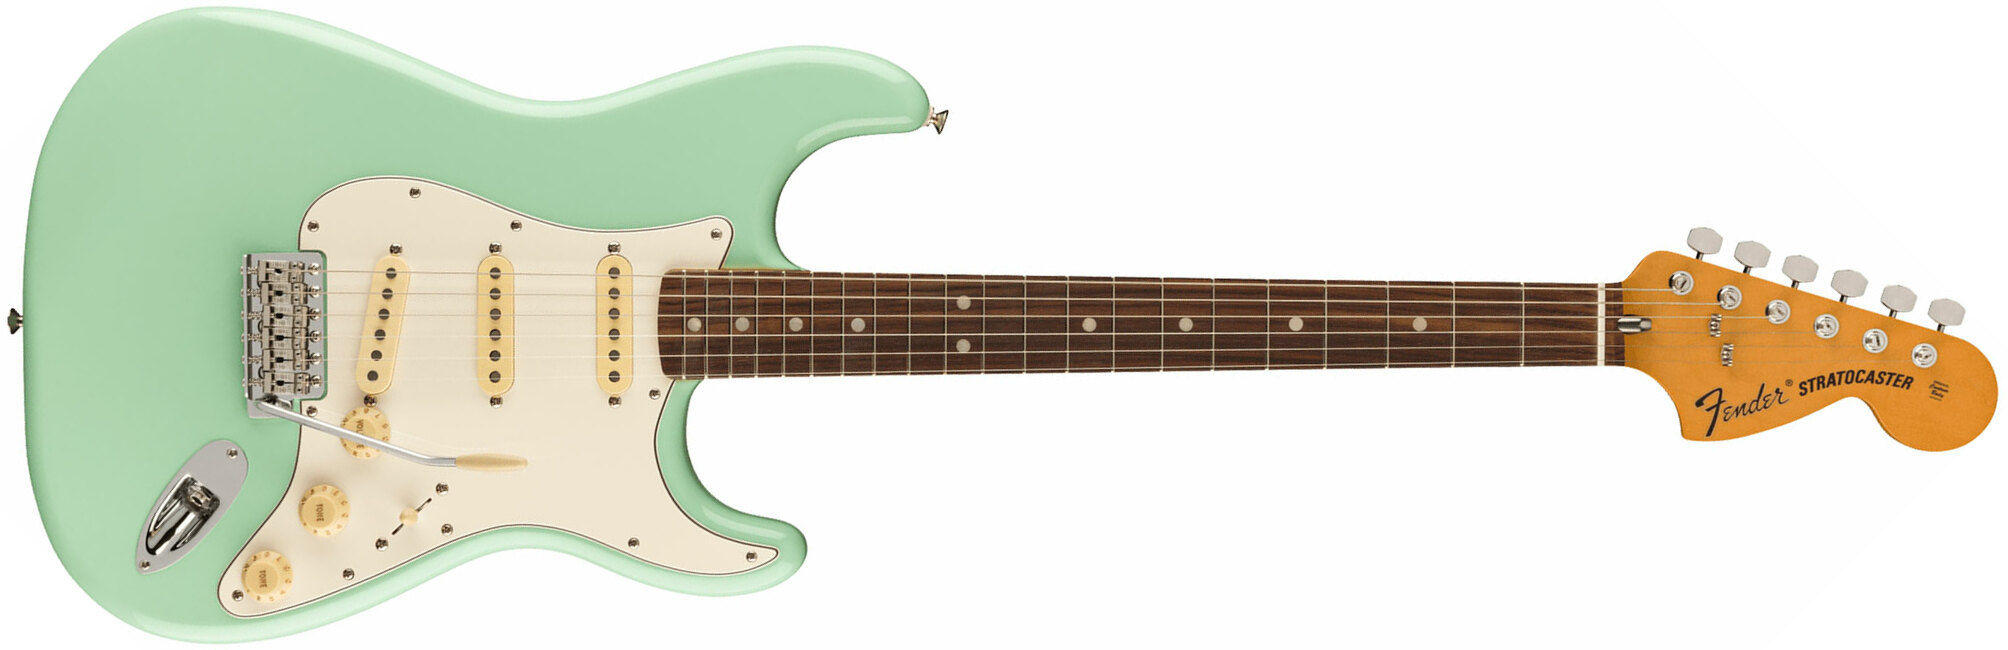 Fender Strat 70s Vintera 2 Mex 3s Trem Rw - Surf Green - Elektrische gitaar in Str-vorm - Main picture